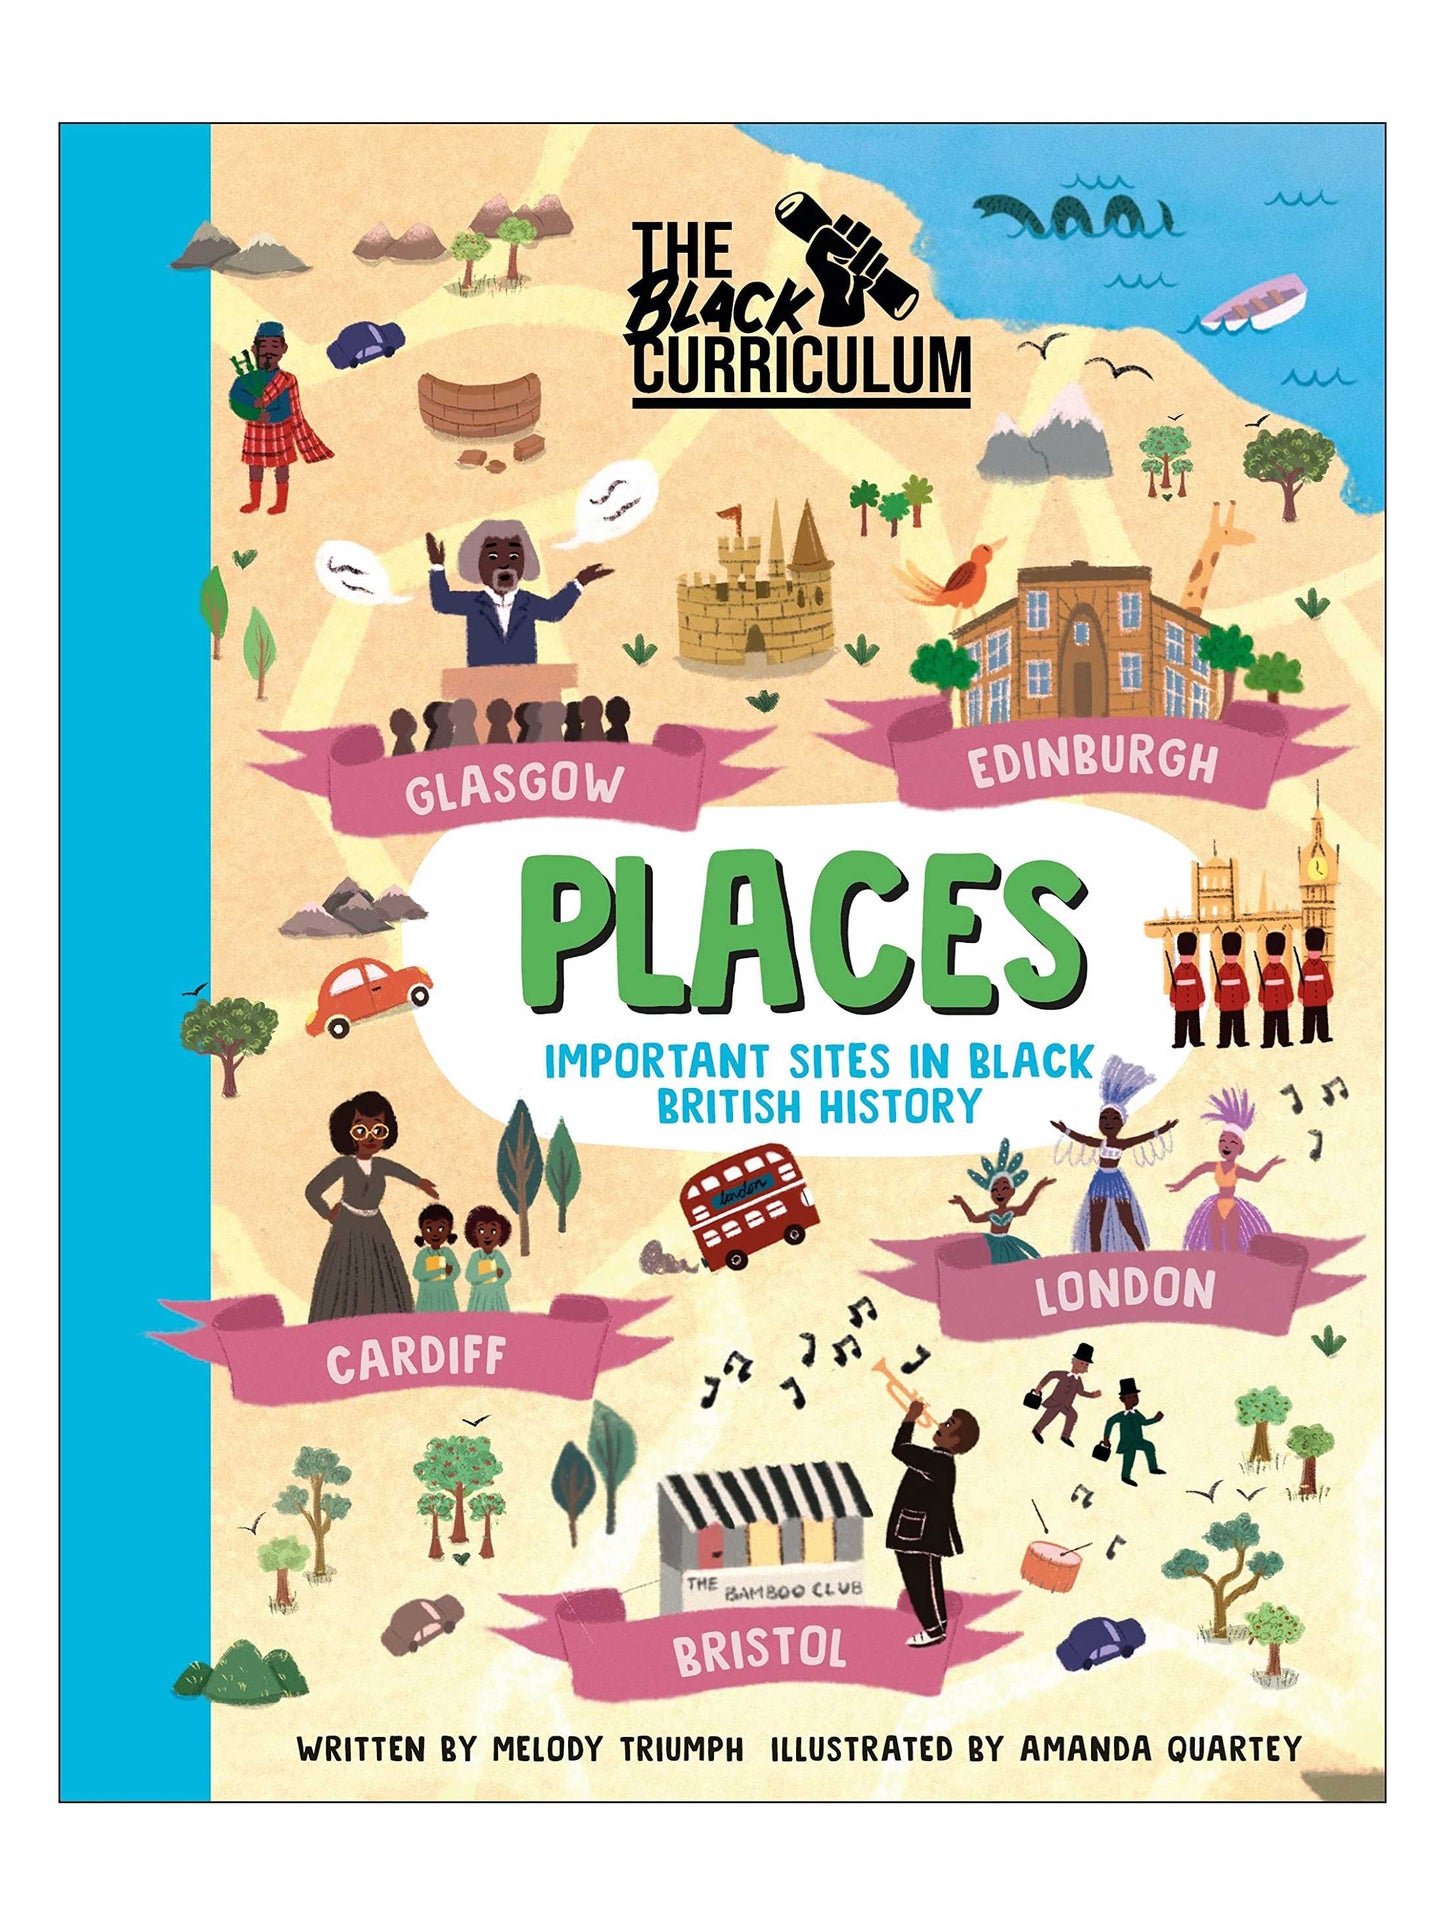 The Black Curriculum: Places